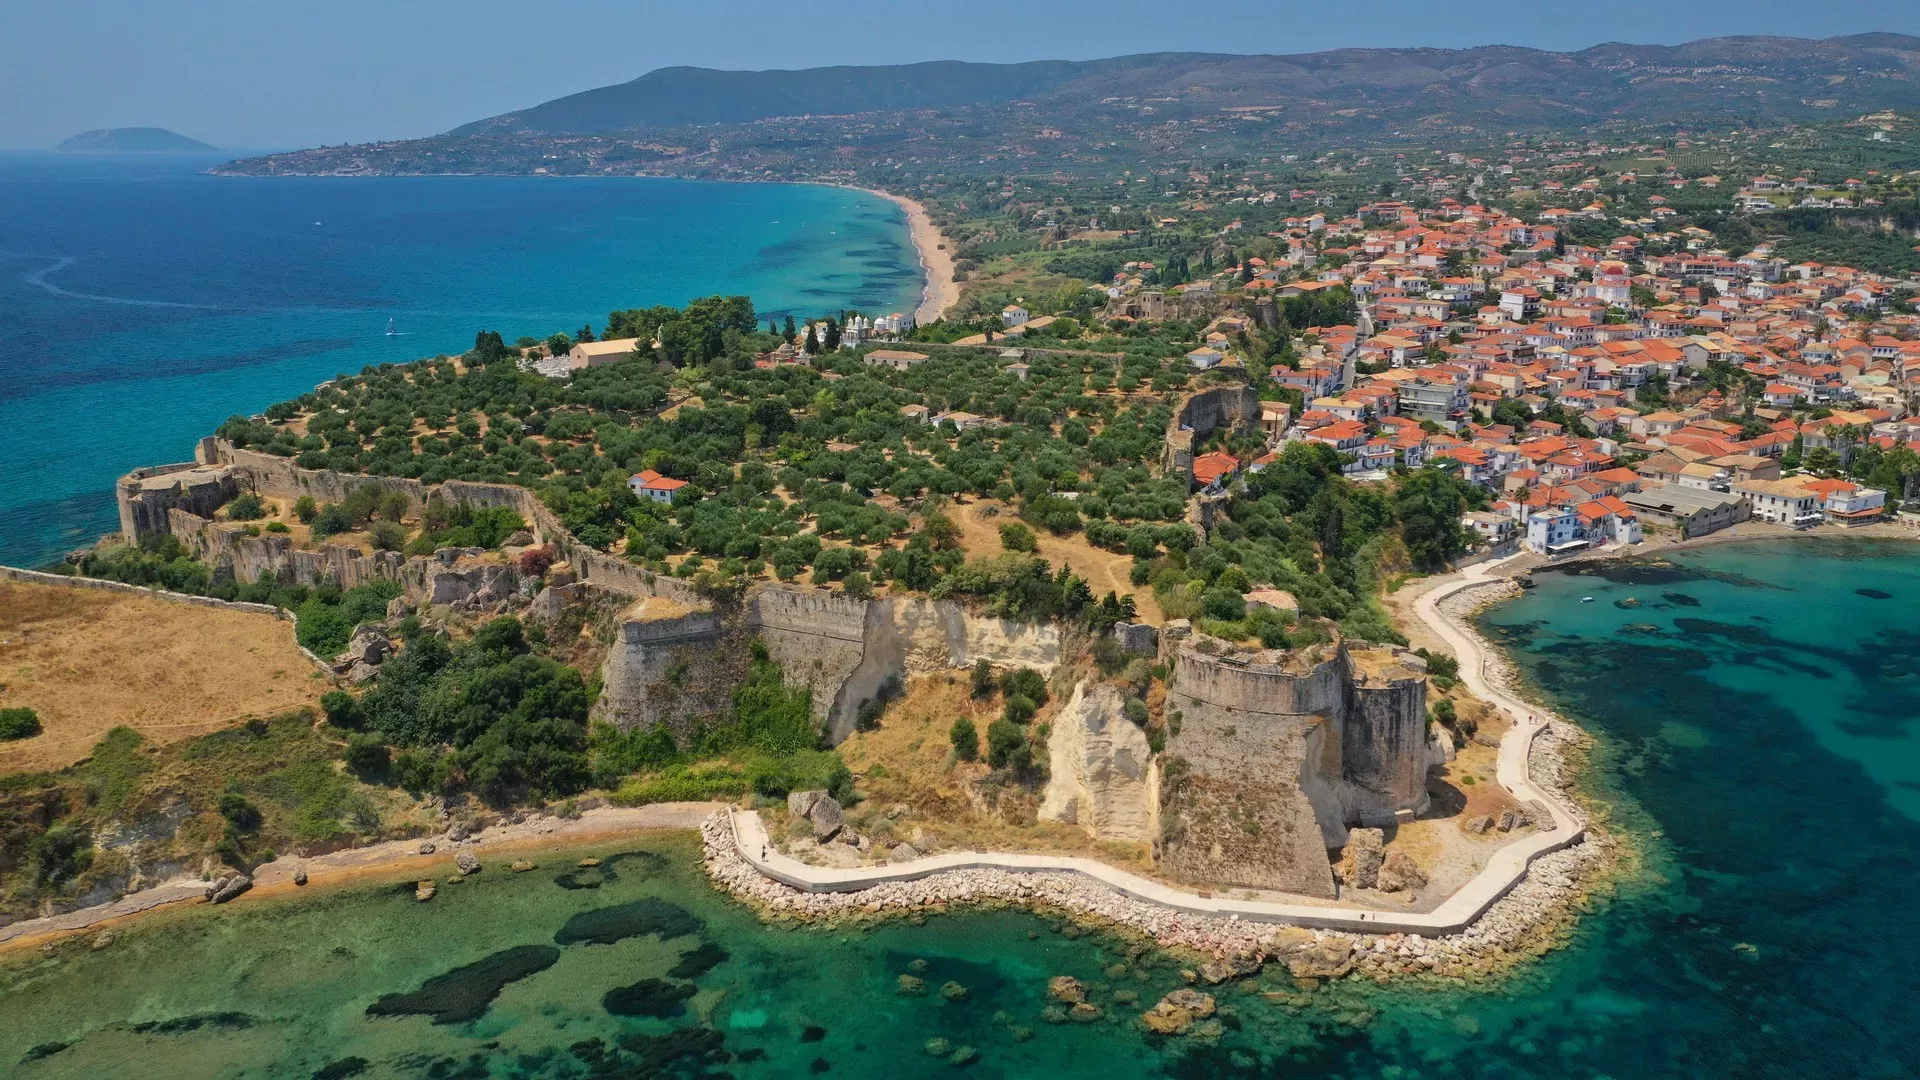 Κορώνη - Μεθώνη: Ταξίδι από ψηλά στις θαλασσινές καστροπολιτείες της Πελοποννήσου